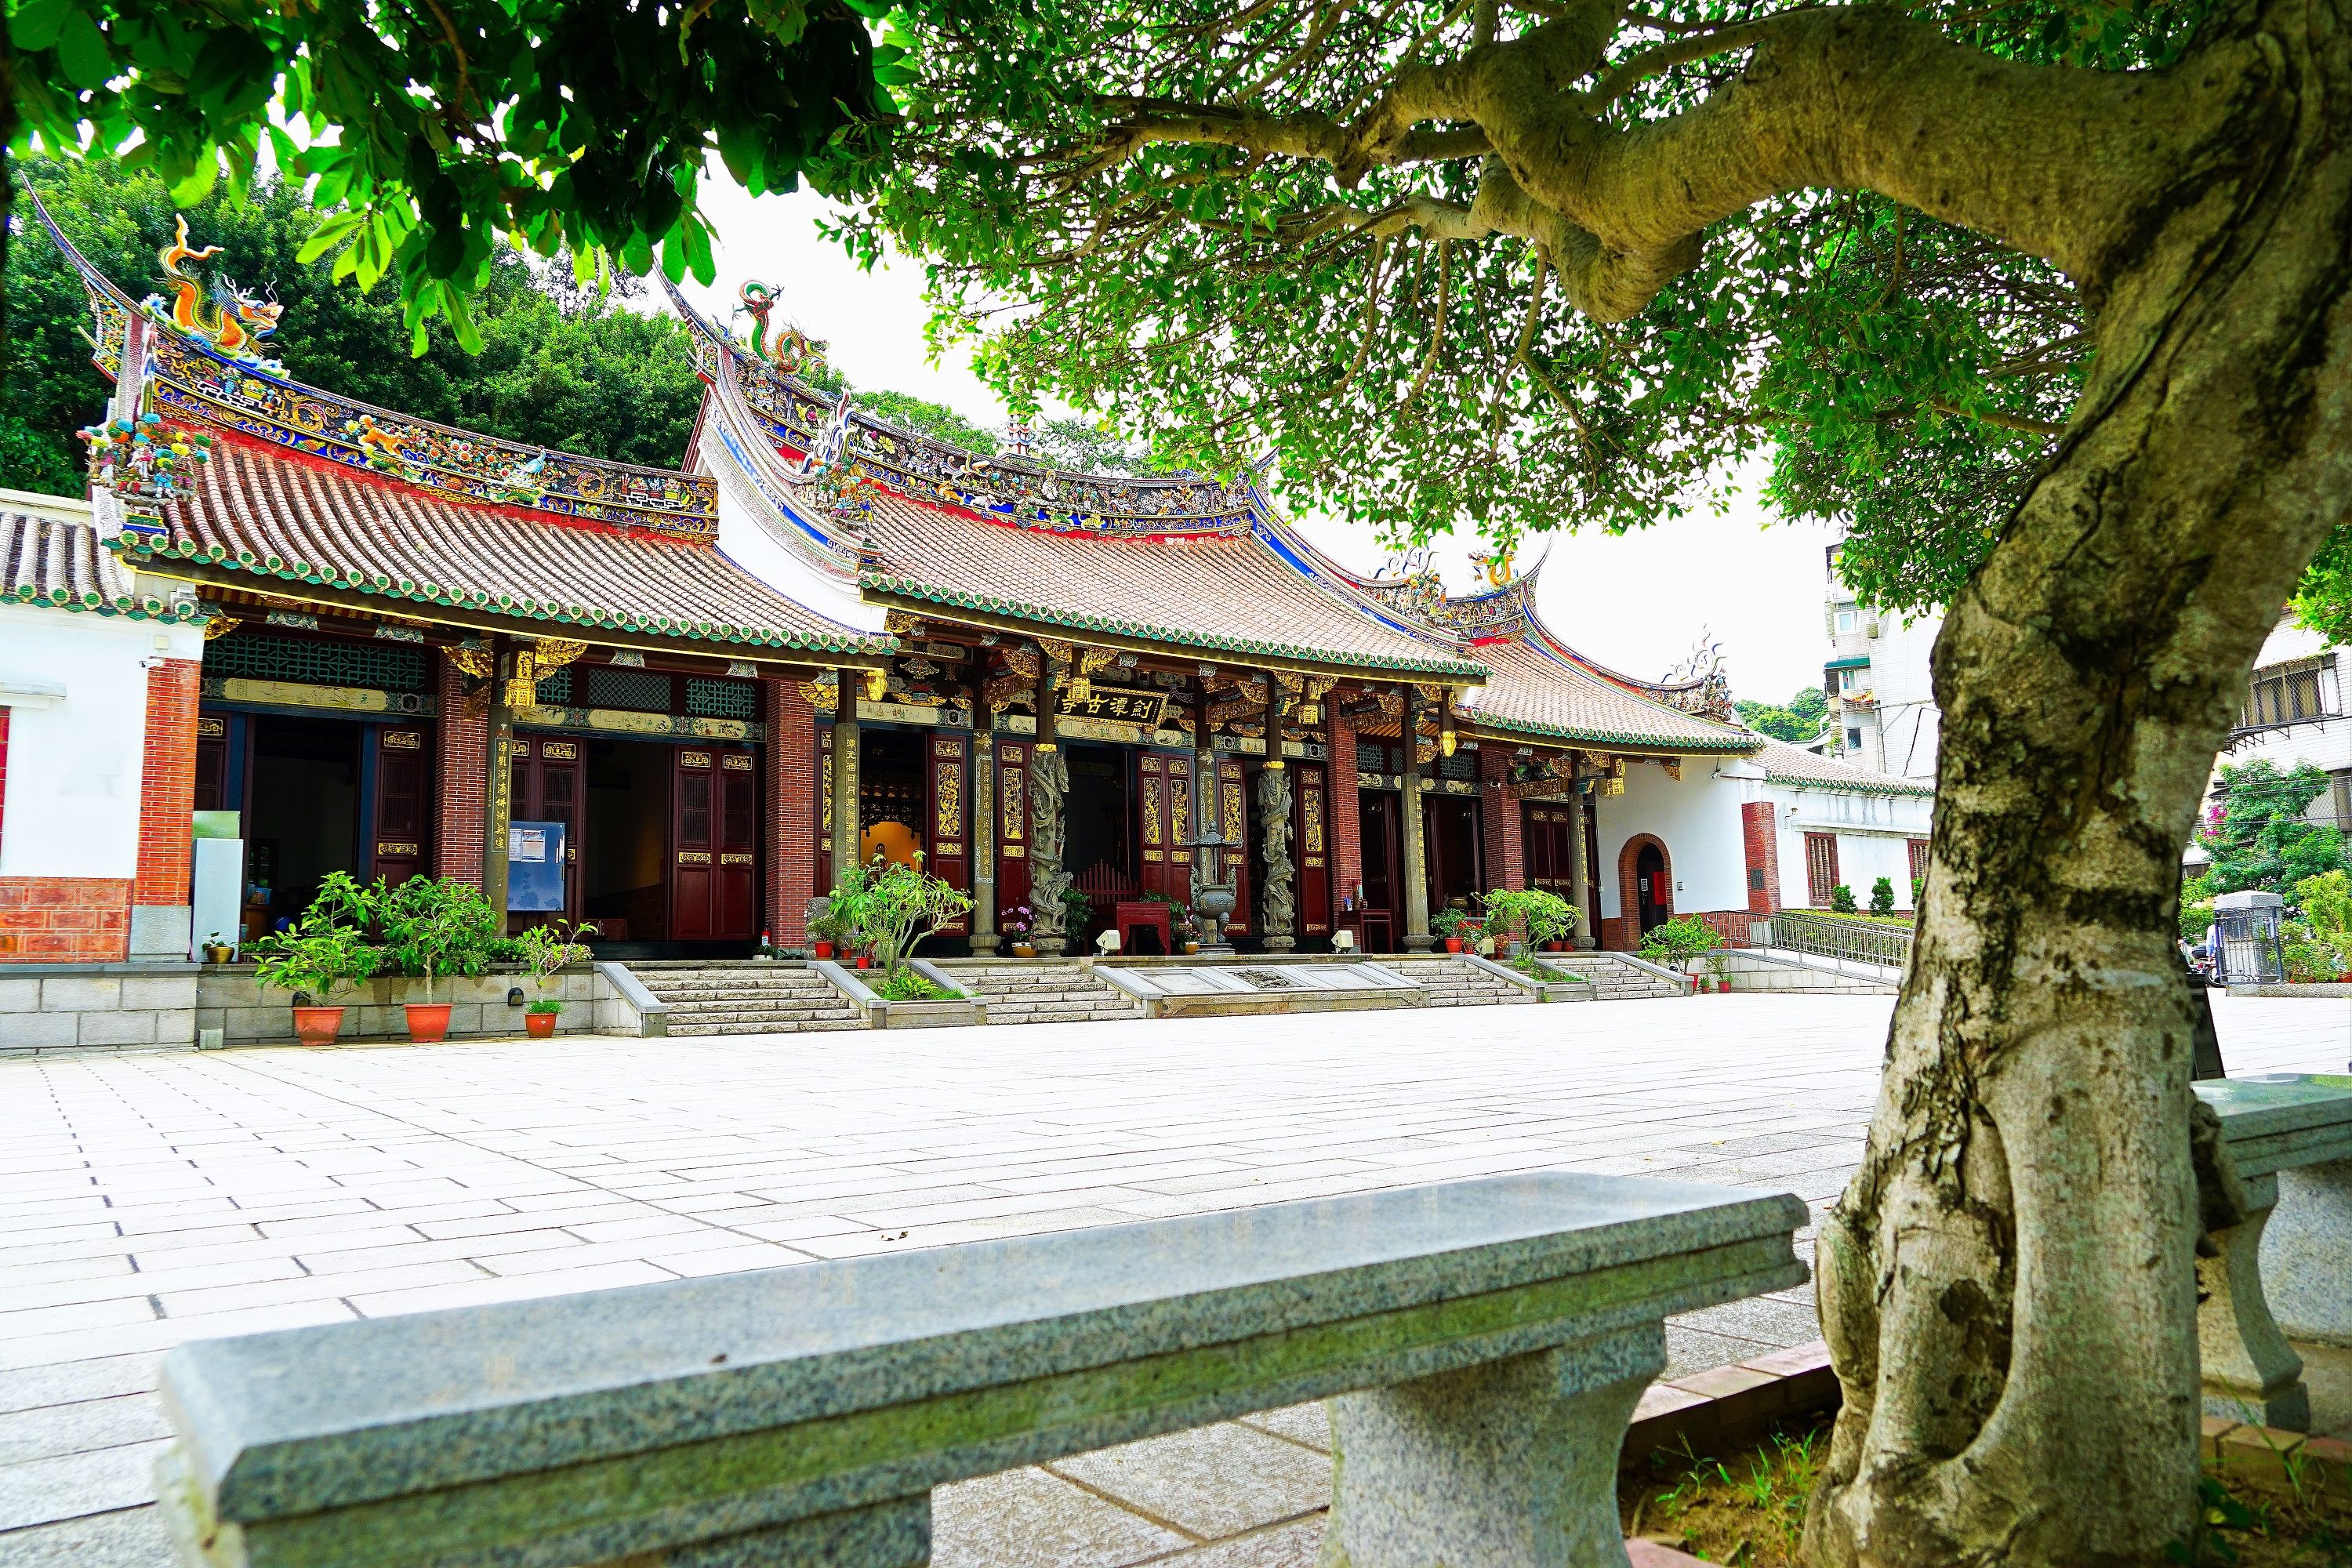 劍潭古寺興建於清乾隆年間至今已有250年歷史。